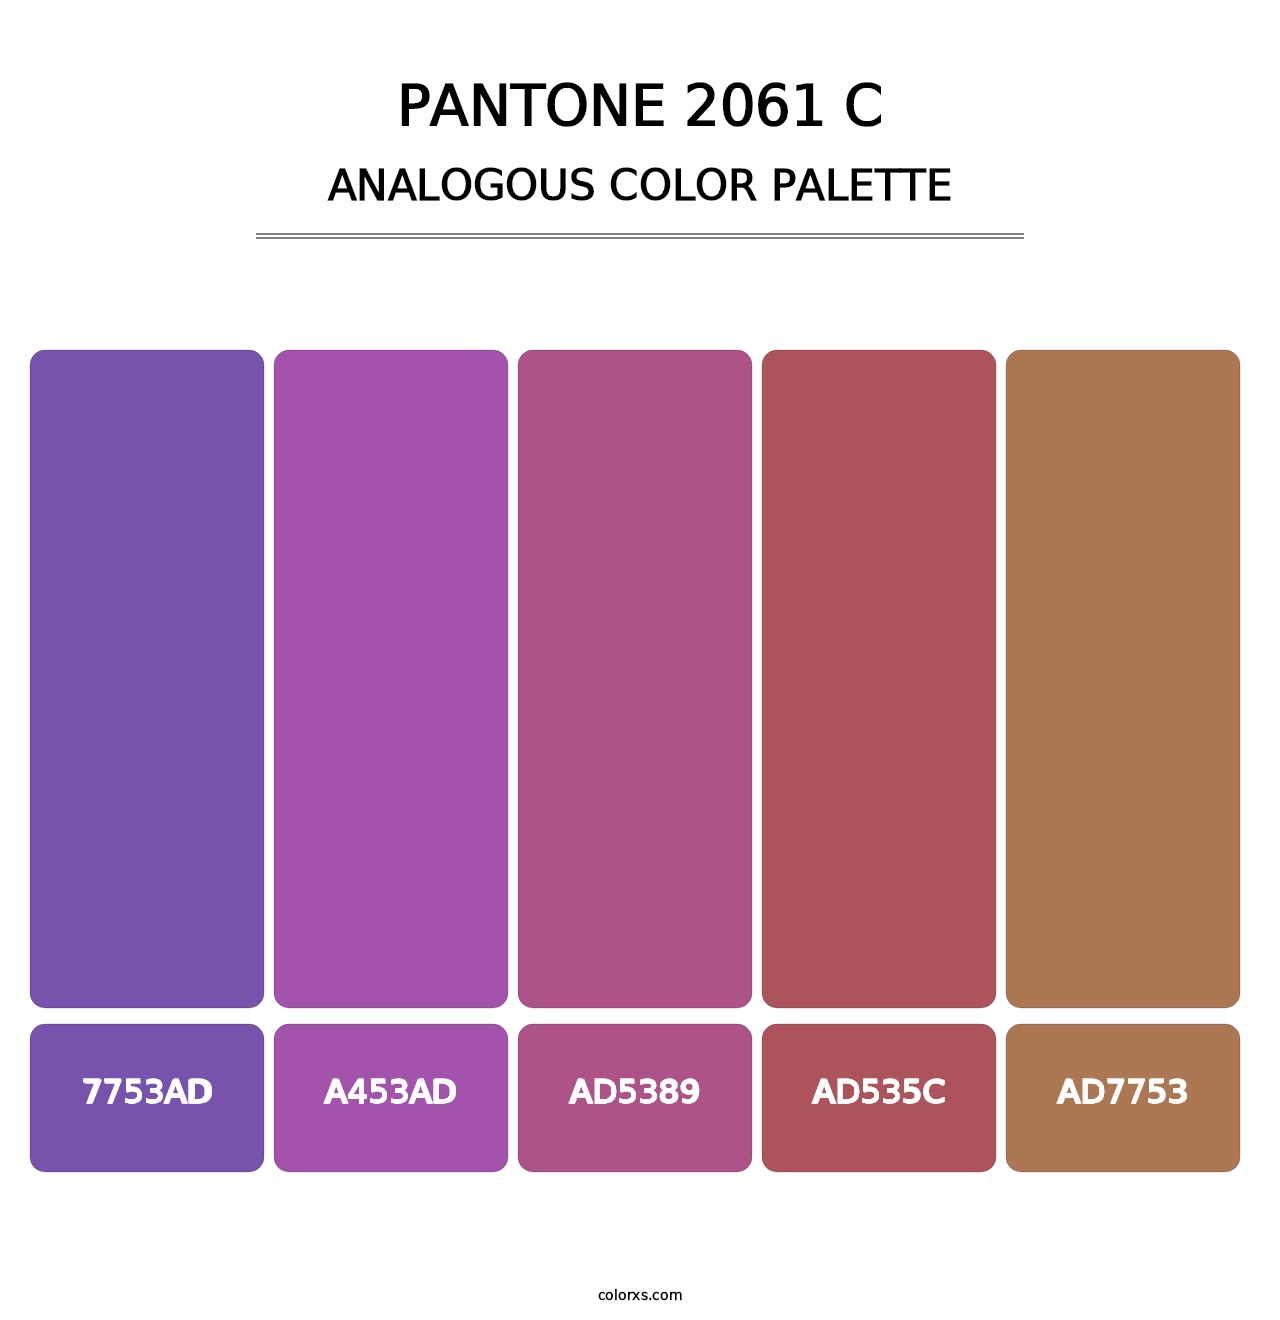 PANTONE 2061 C - Analogous Color Palette